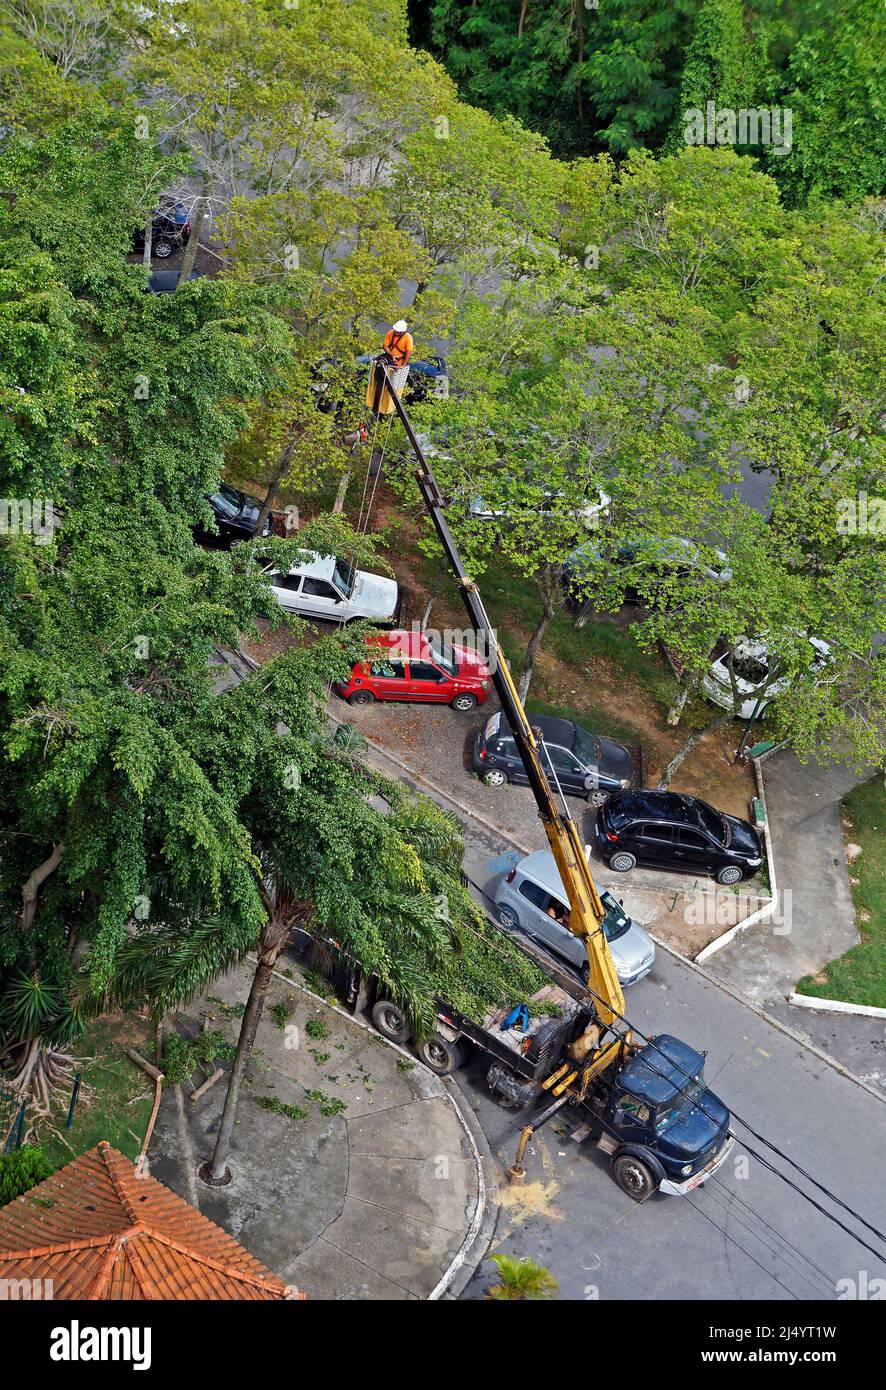 RÍO DE JANEIRO, BRASIL - 22 DE FEBRERO de 2021: Trabajador de servicio que poda ramas de árboles en una plataforma de un camión grúa Foto de stock